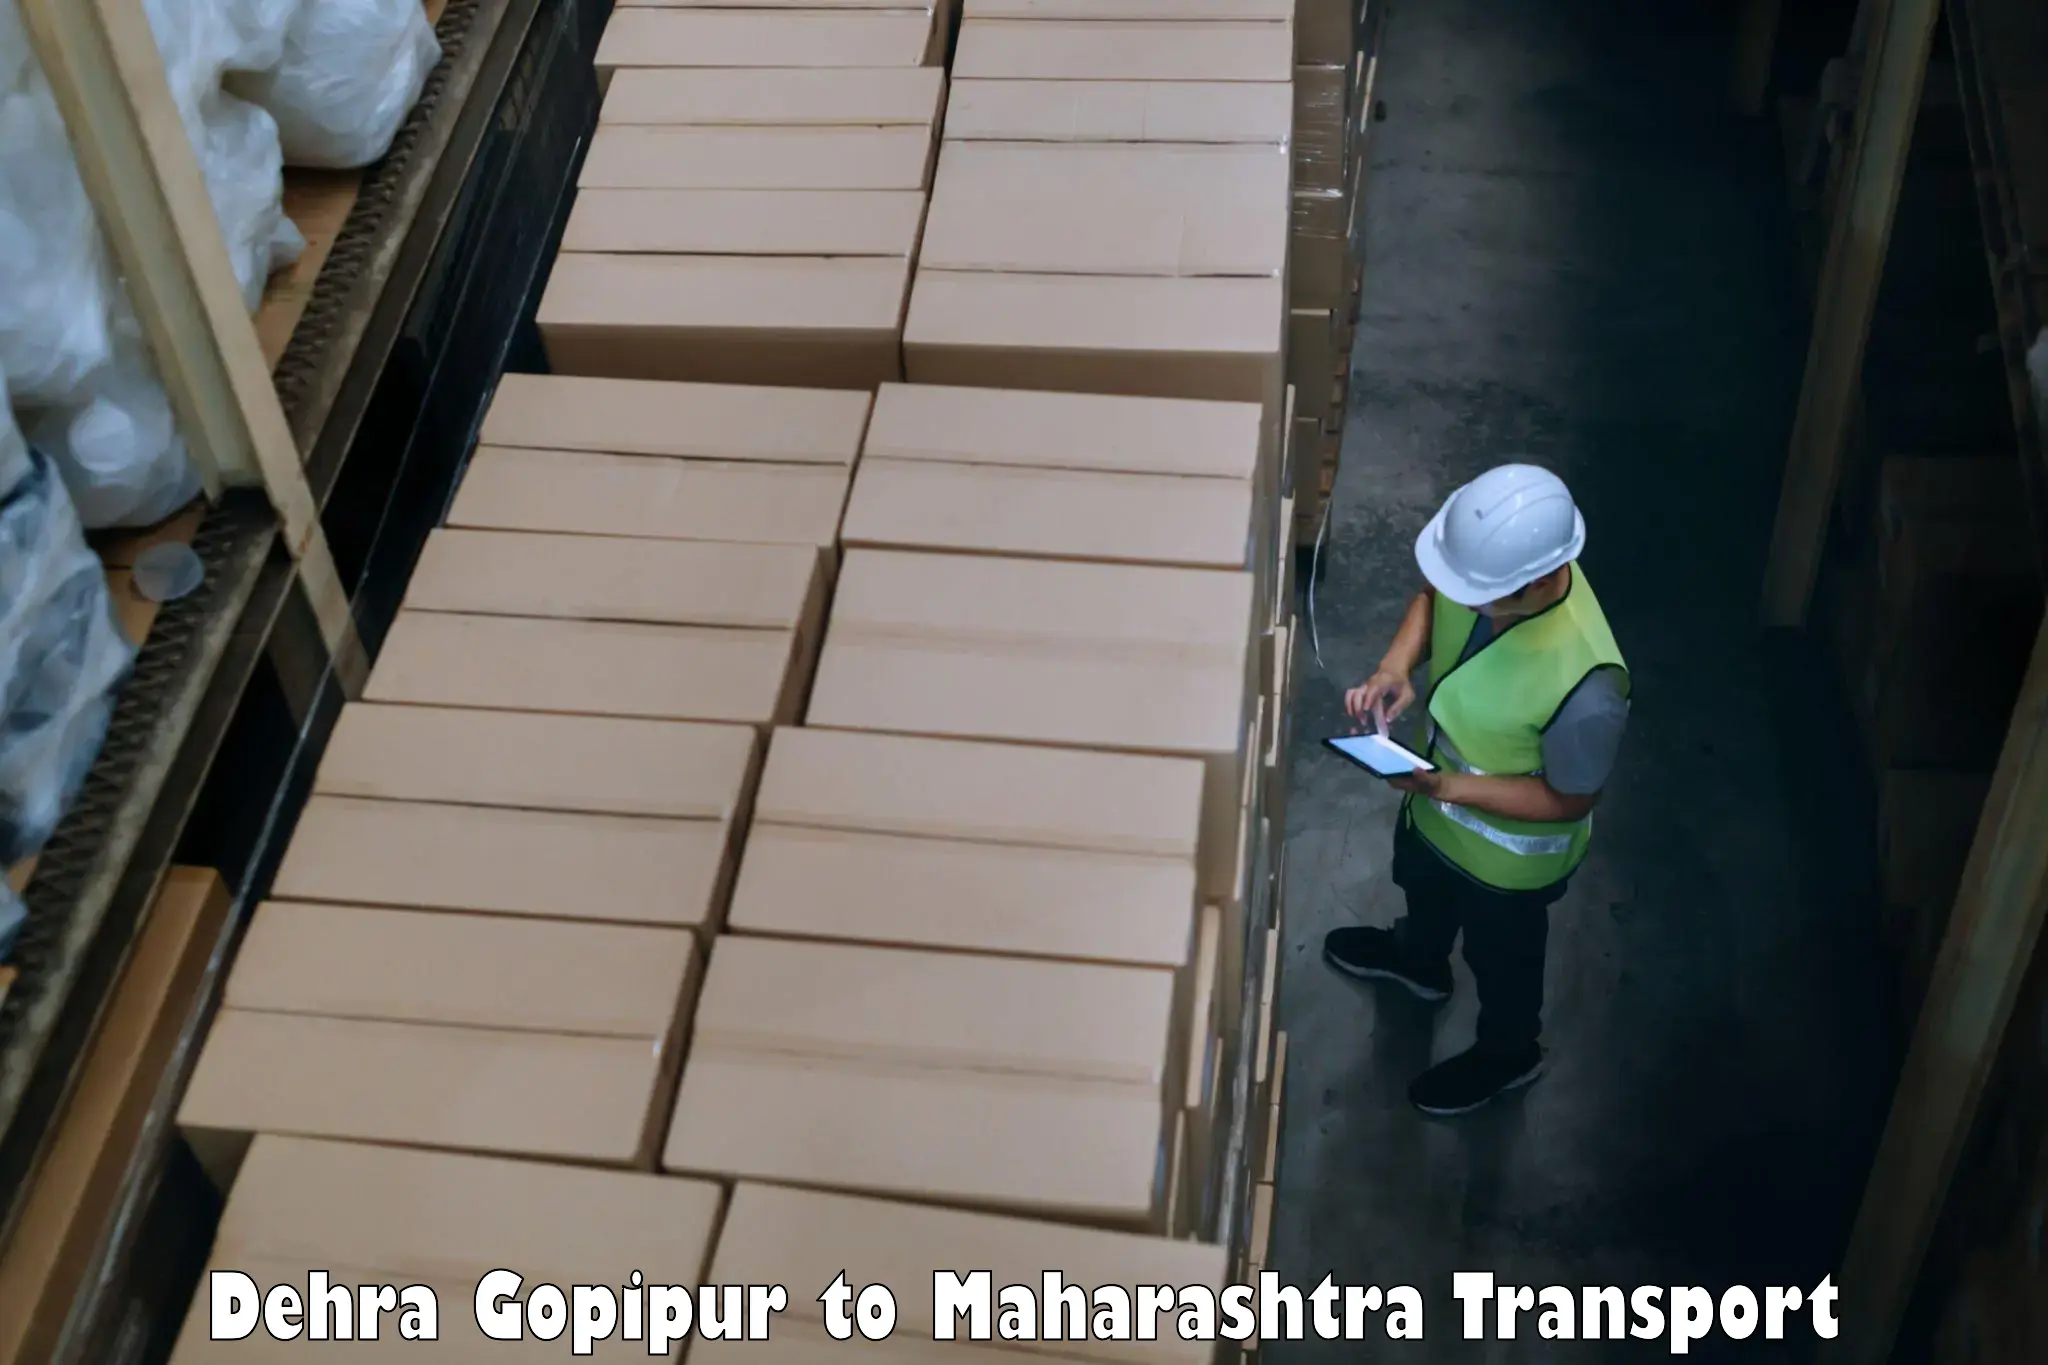 Container transportation services Dehra Gopipur to Mumbai